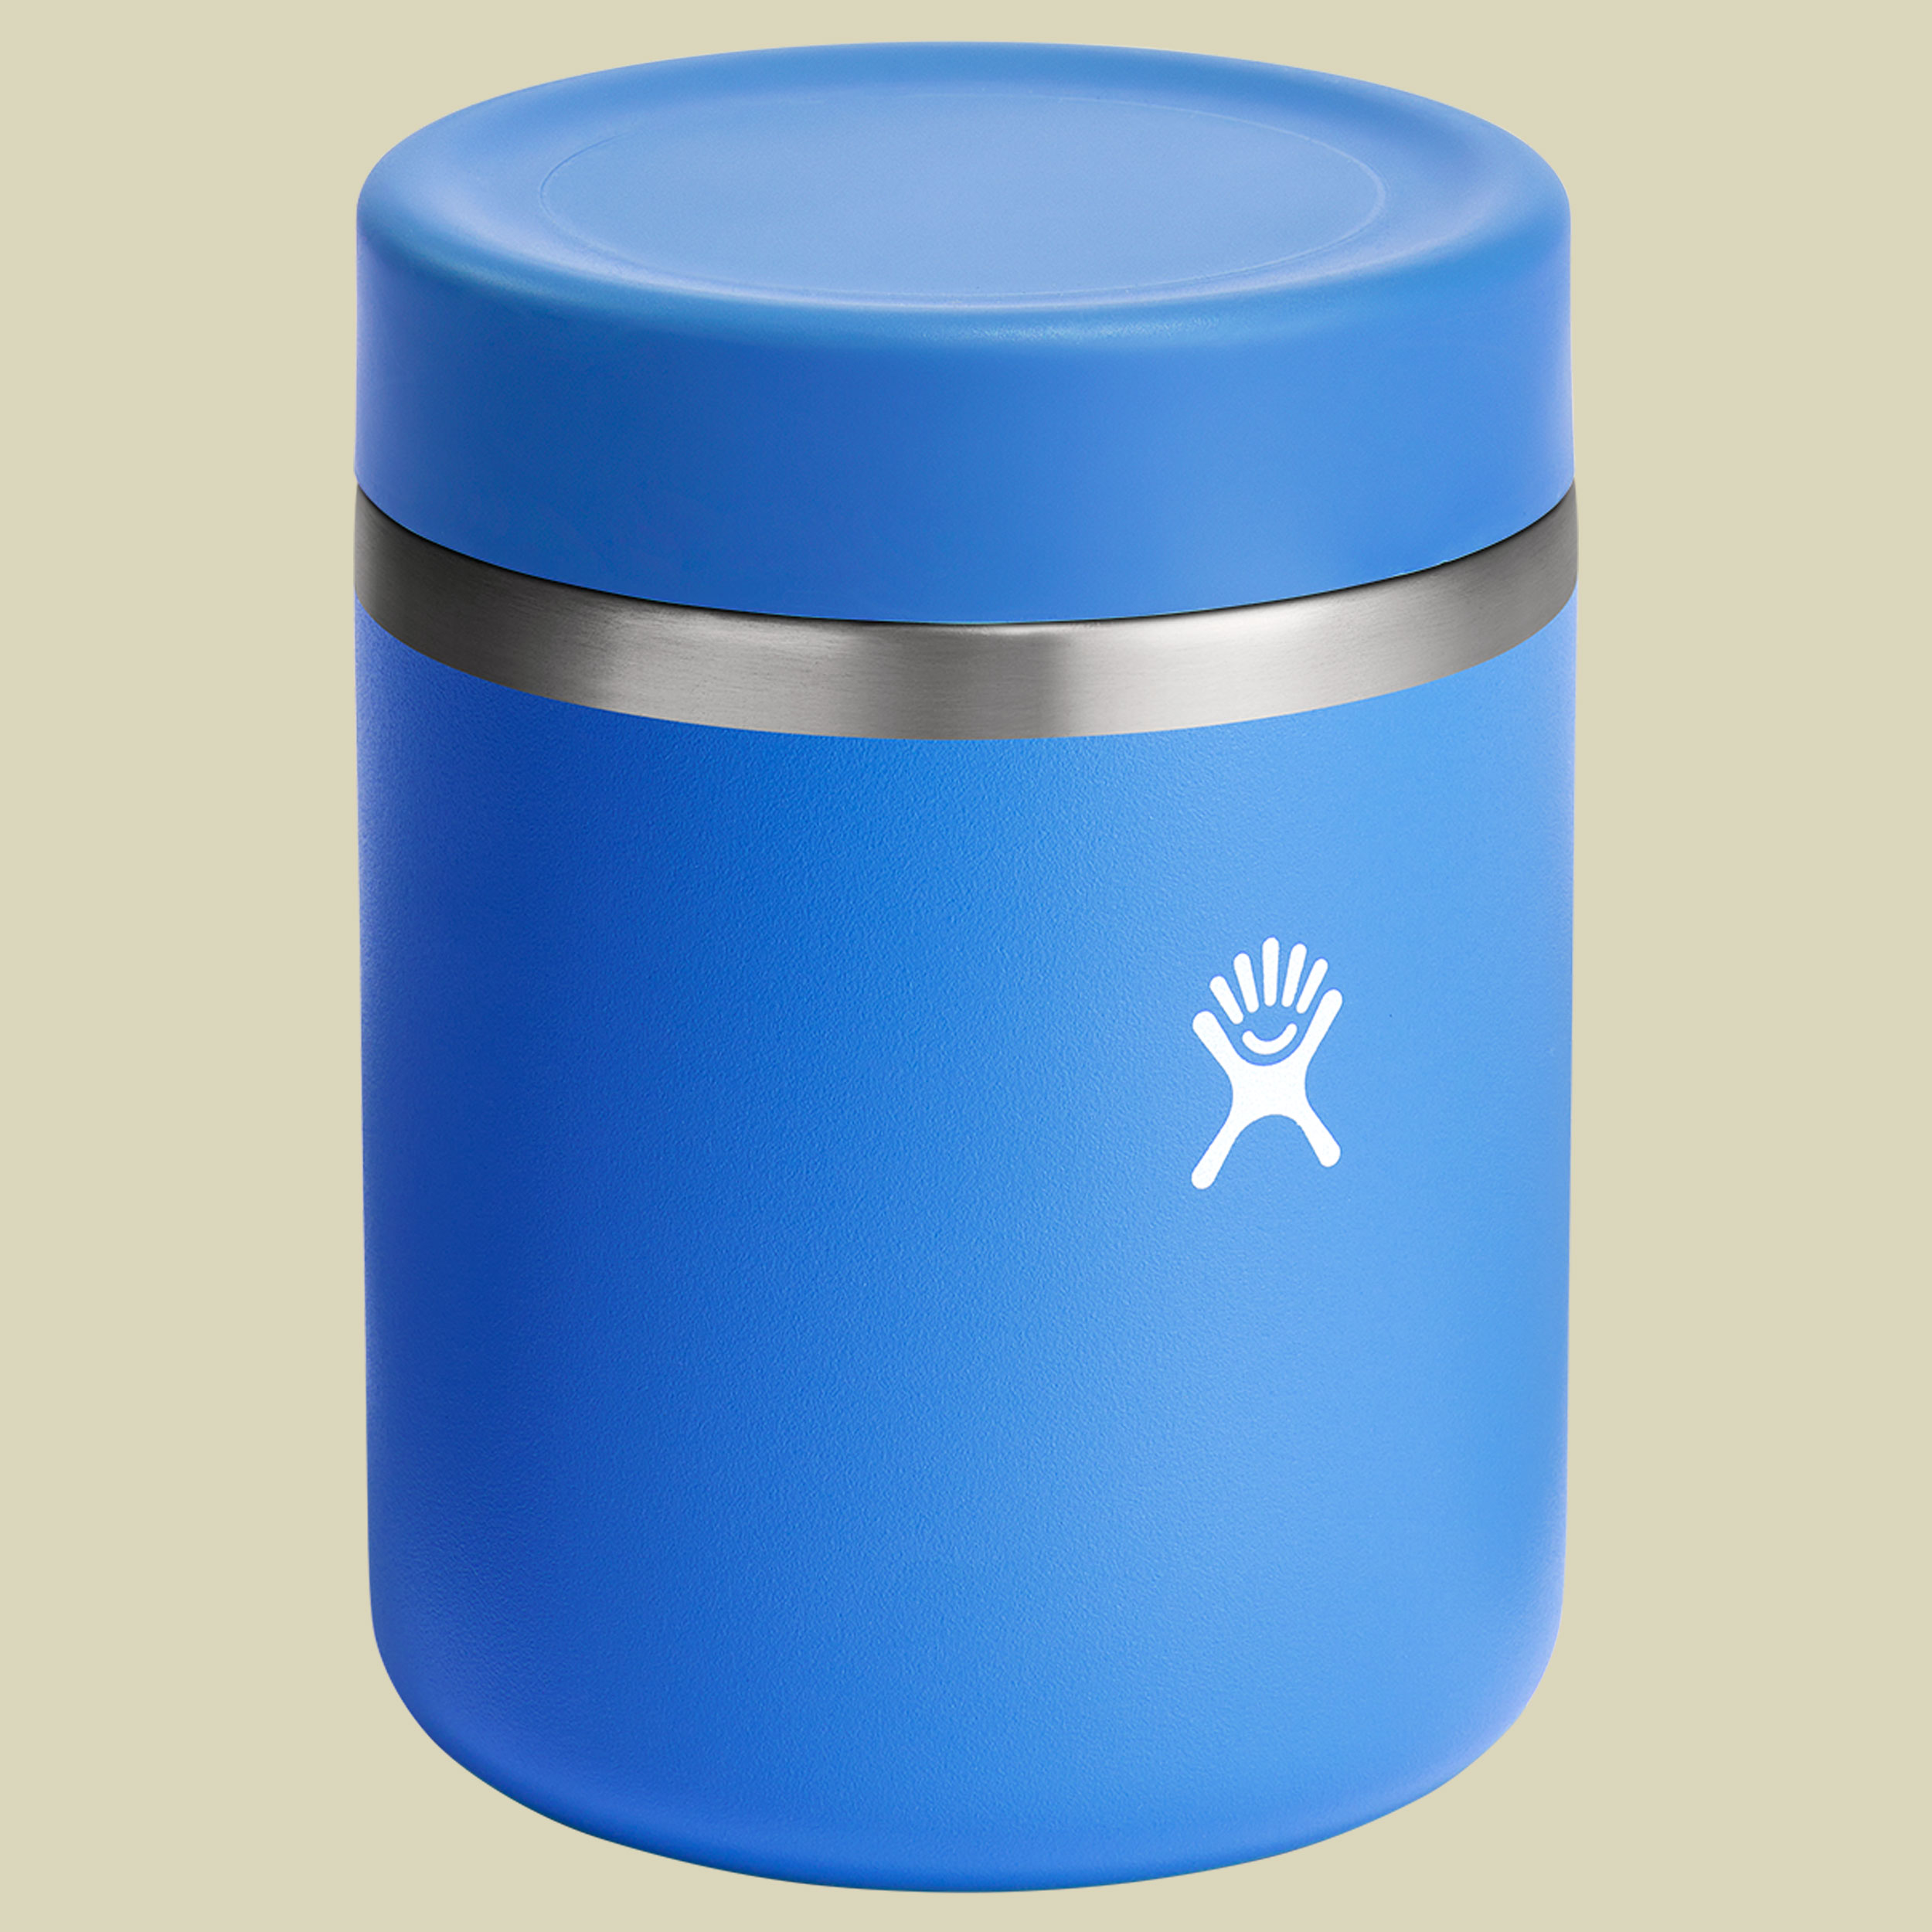 28 oz Insulated Food Jar blau 828 - Farbe blau